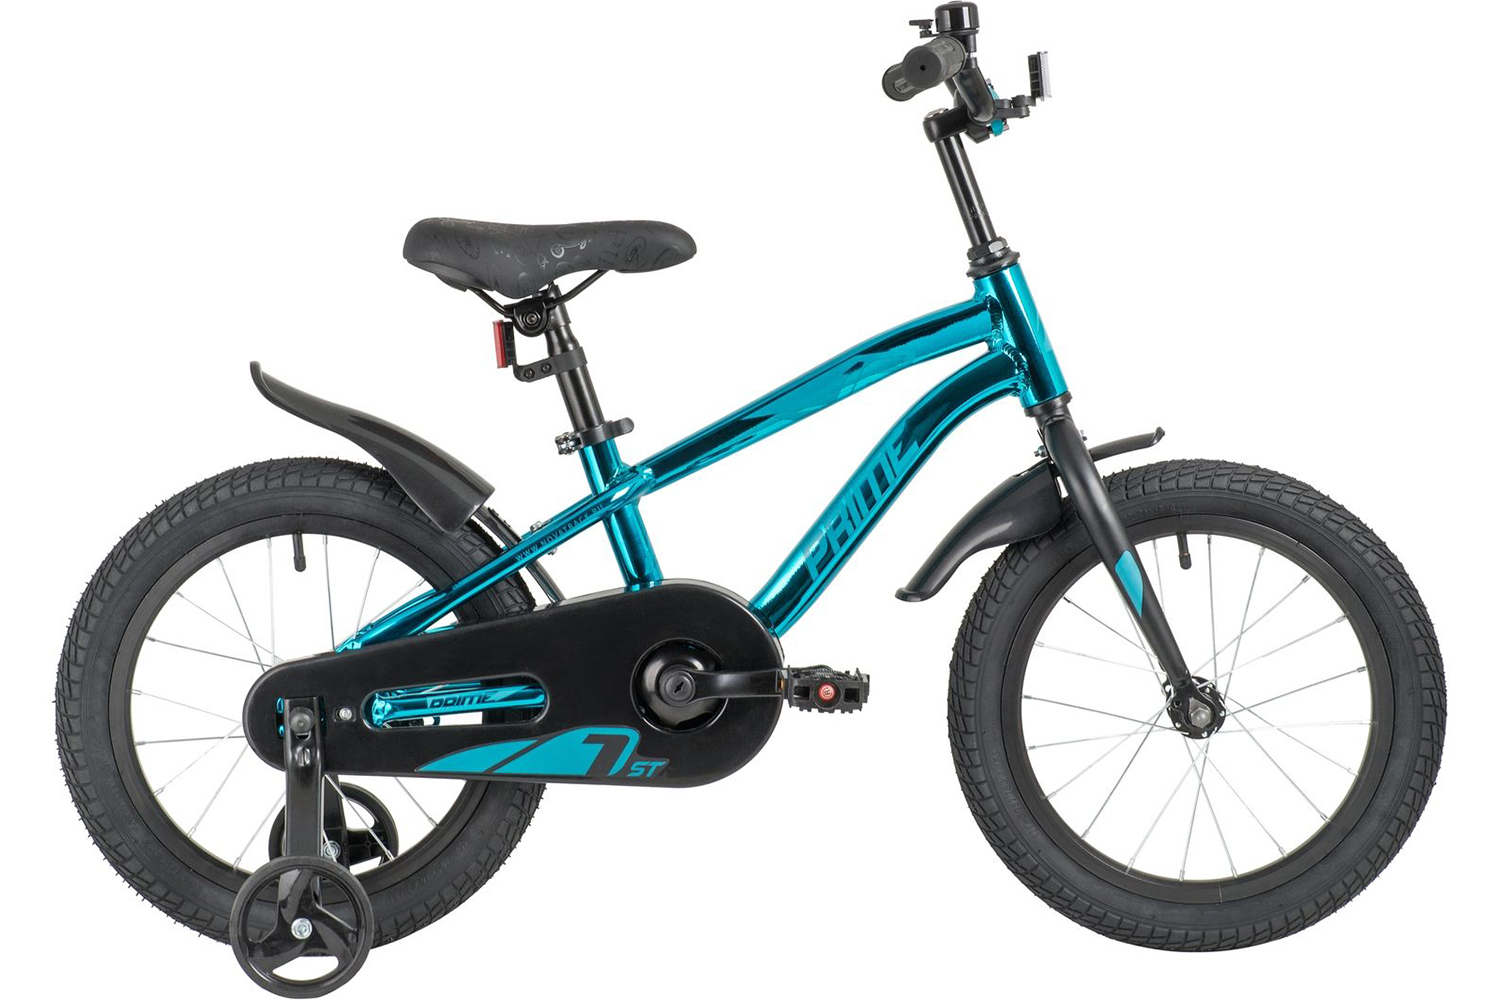  Отзывы о Детском велосипеде Novatrack Prime 16 Alloy 2020